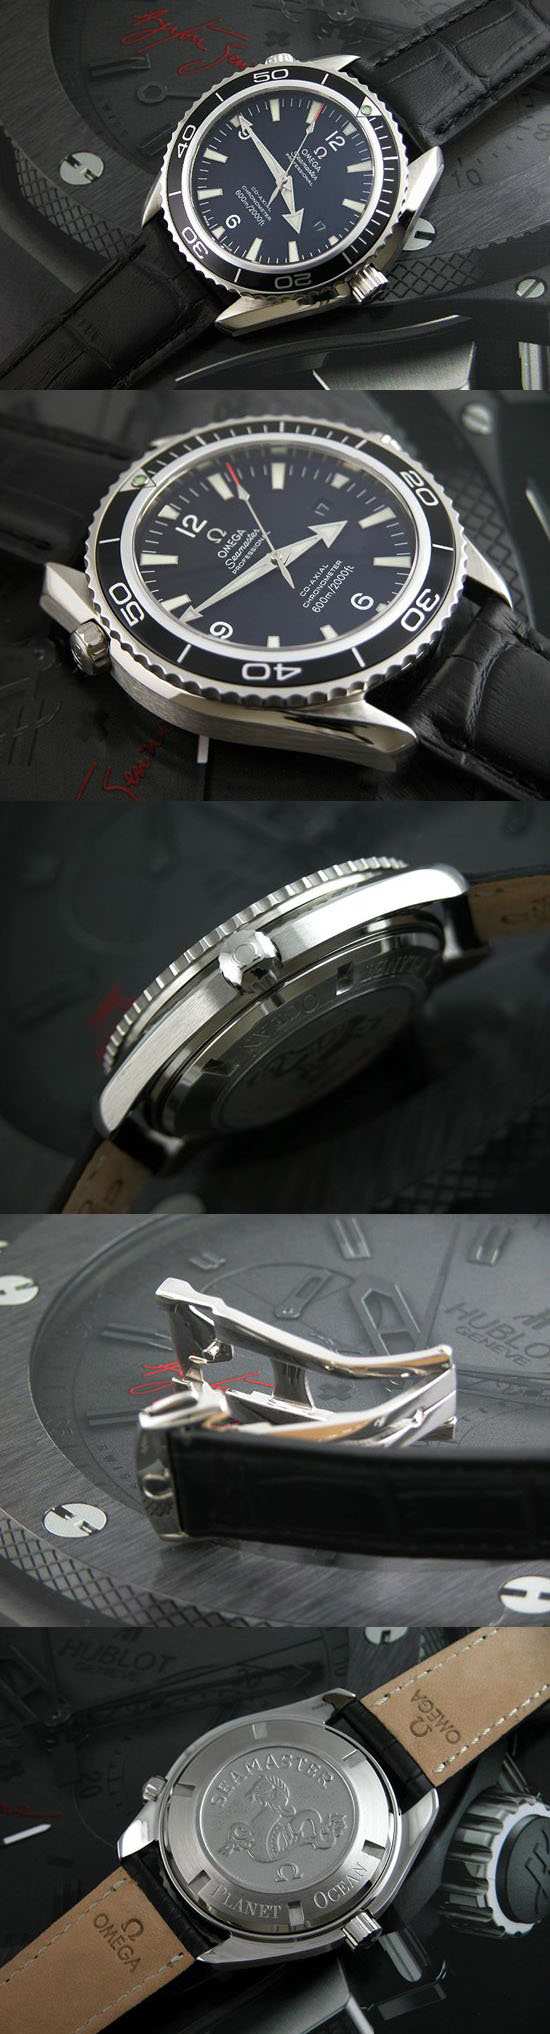 おしゃれなブランド時計がオメガ-シーマスター-OMEGA-2201-50-00-bs-男性用を提供します.